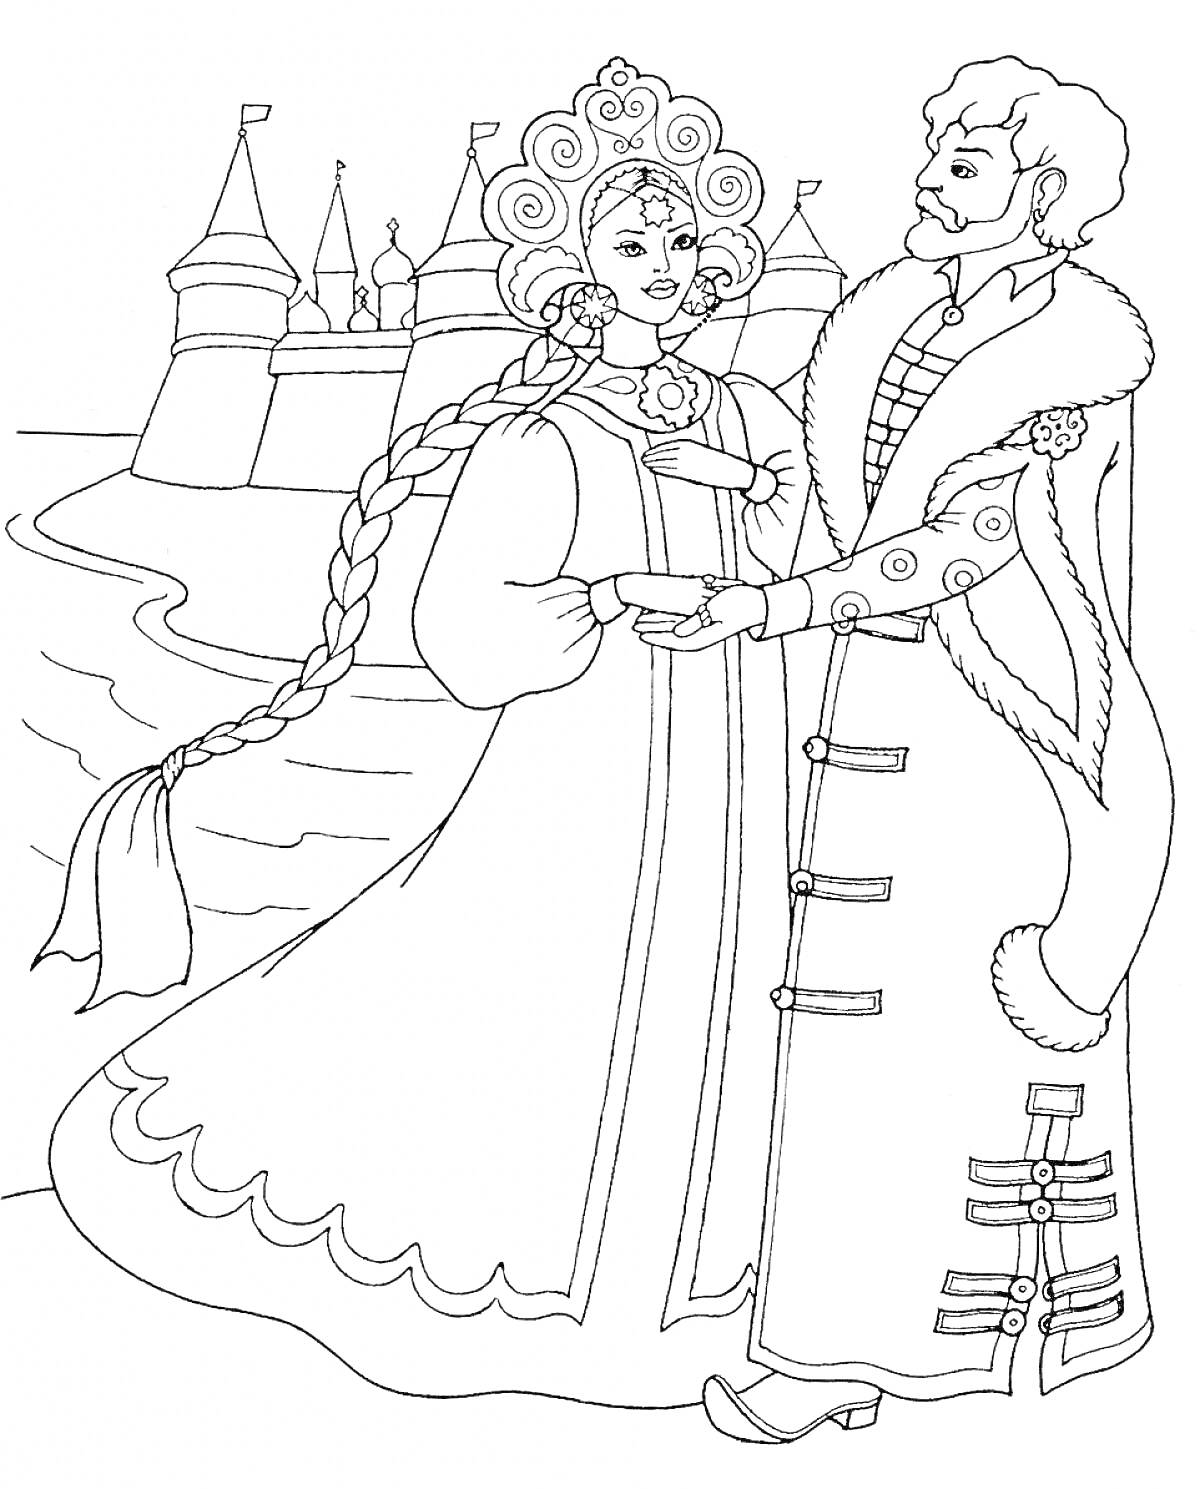 царь и царевна у замка-резиденции, мужчина в длинном плаще с мехом, женщина с косой в кокошнике